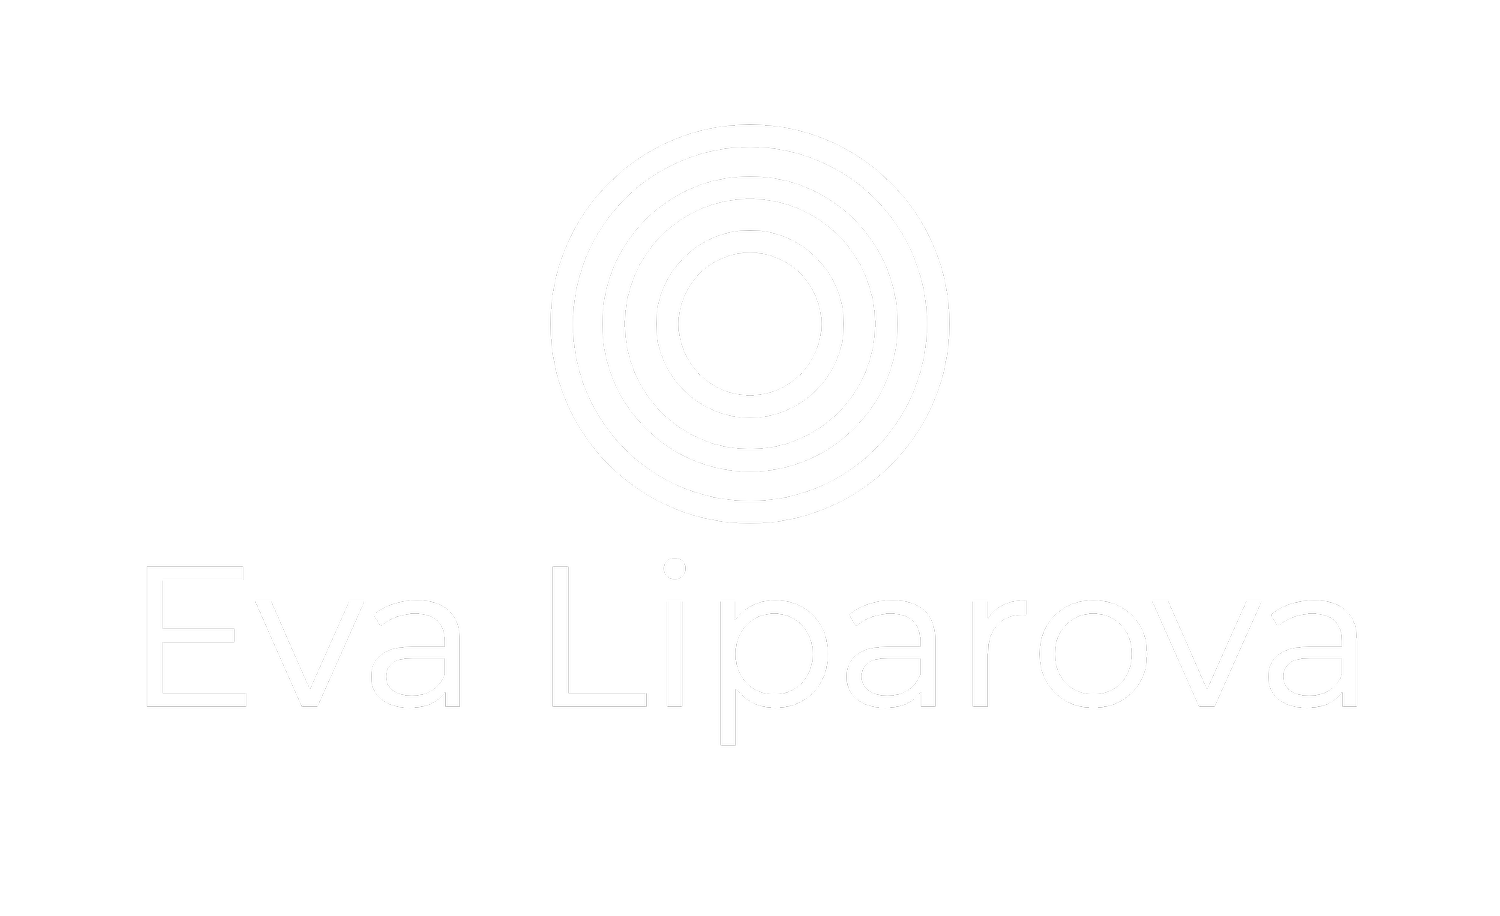 Eva Liparova